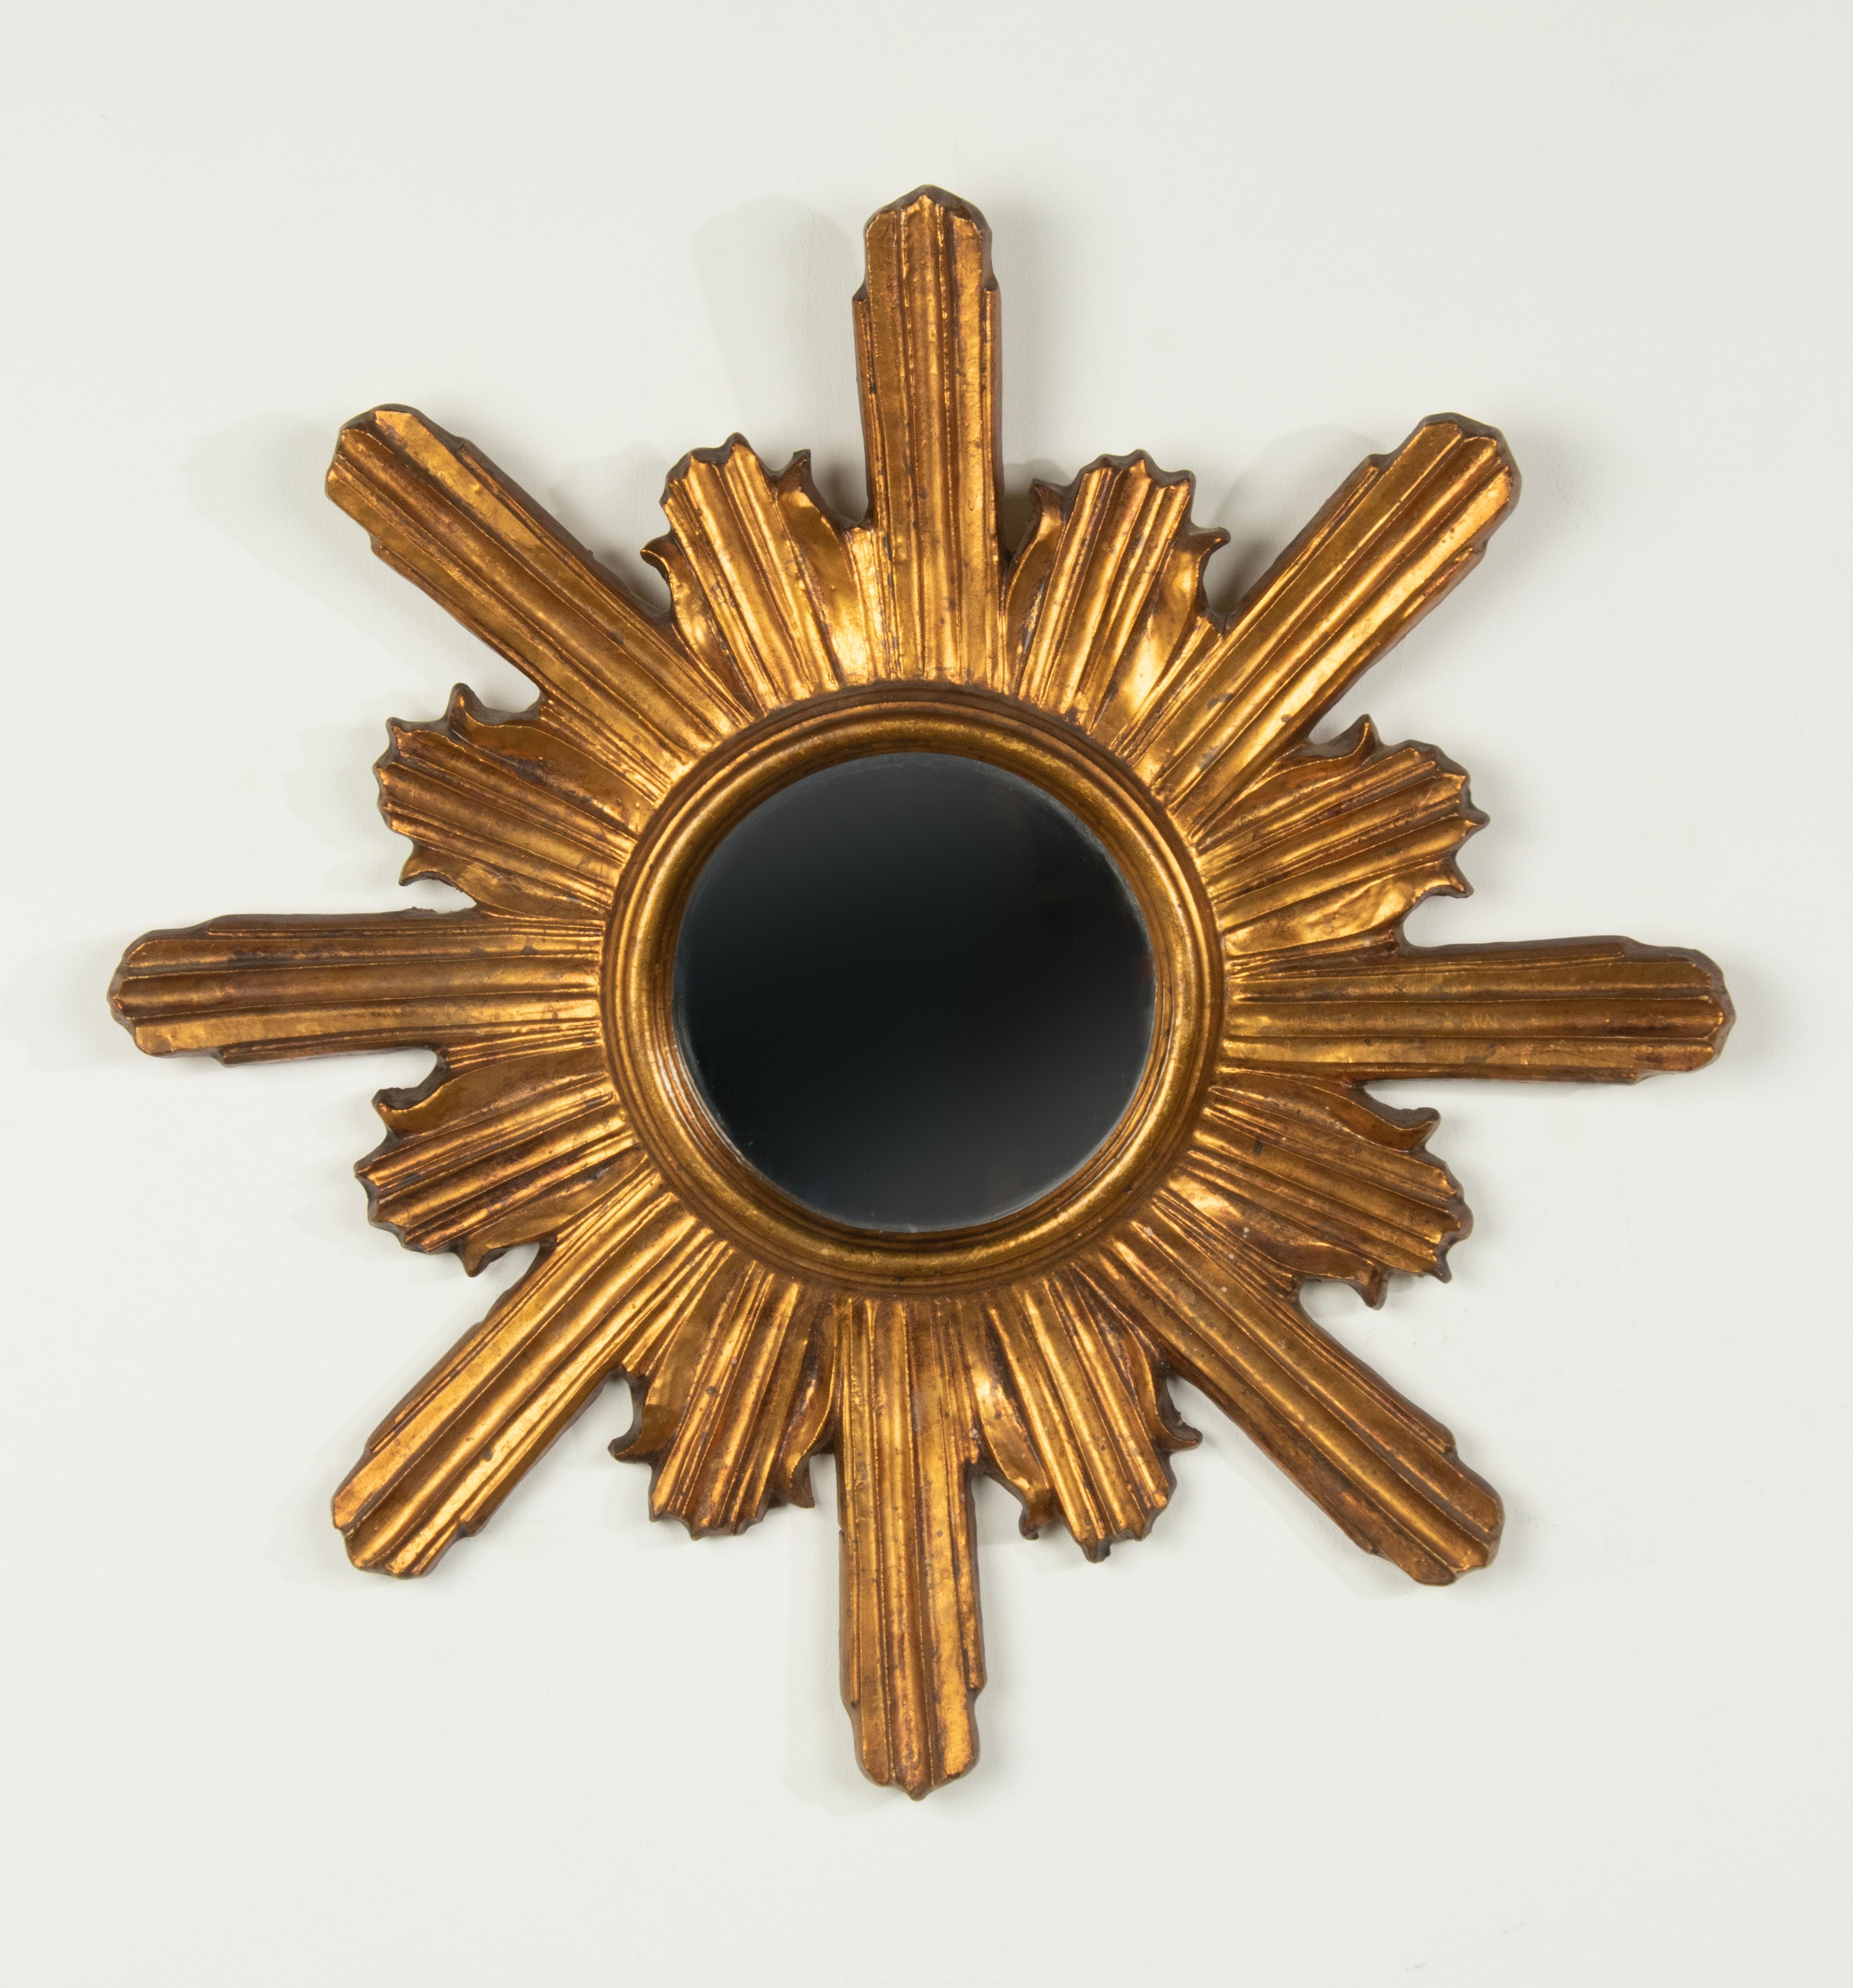 Magnifique miroir ancien en bois doré. Le miroir est en bois sculpté à la main, avec une patine dorée. Avec un miroir en verre plat. Le bois et le verre sont en bon état. Datant d'environ 1920-1930, probablement de fabrication française. 
Dimension